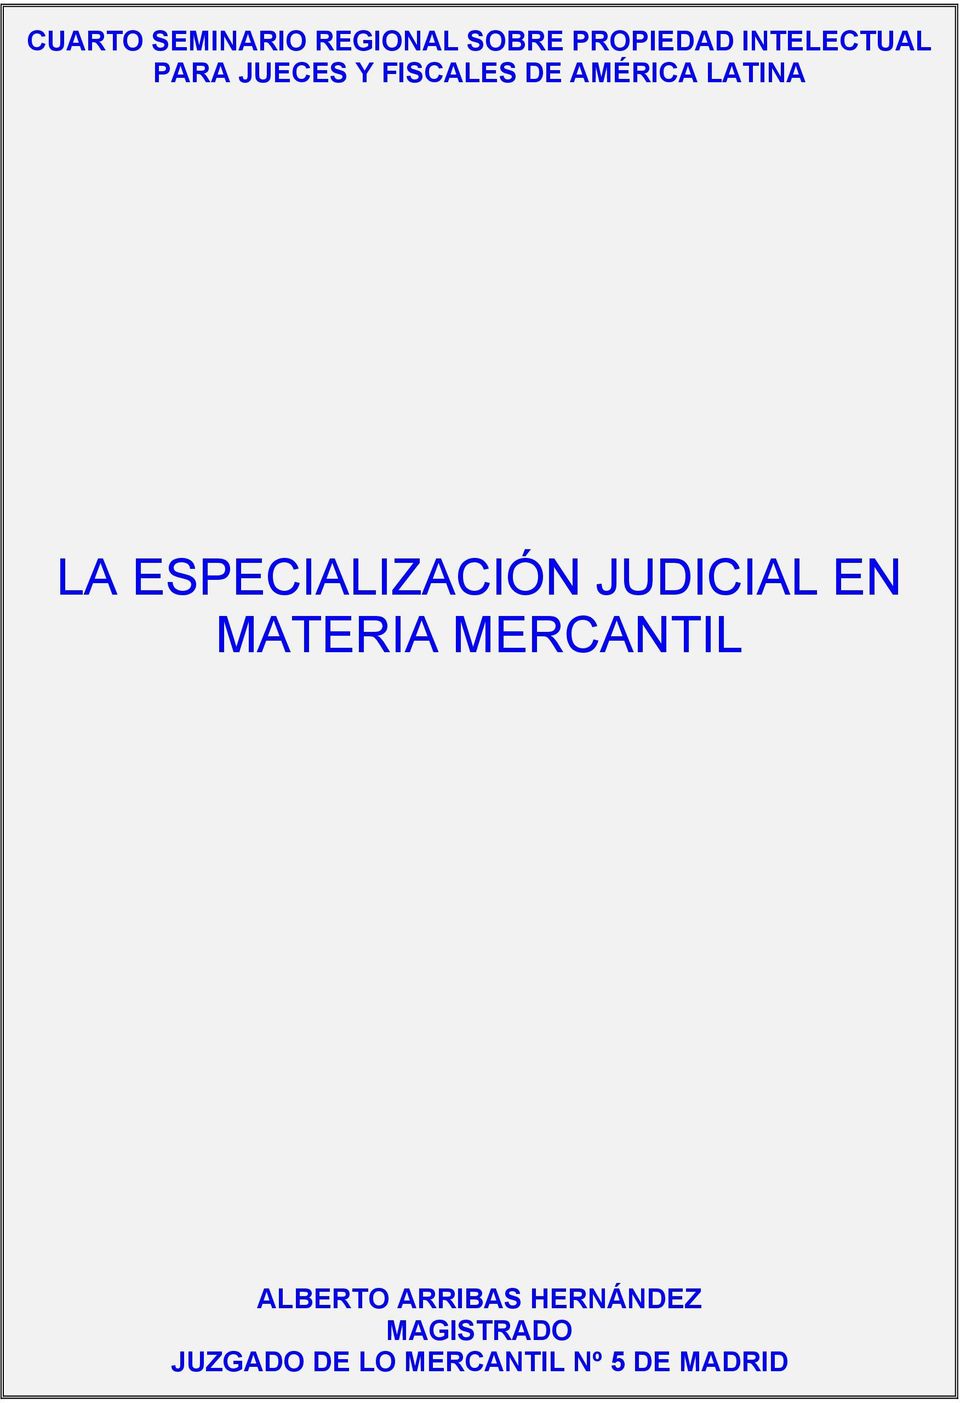 ESPECIALIZACIÓN JUDICIAL EN MATERIA MERCANTIL ALBERTO